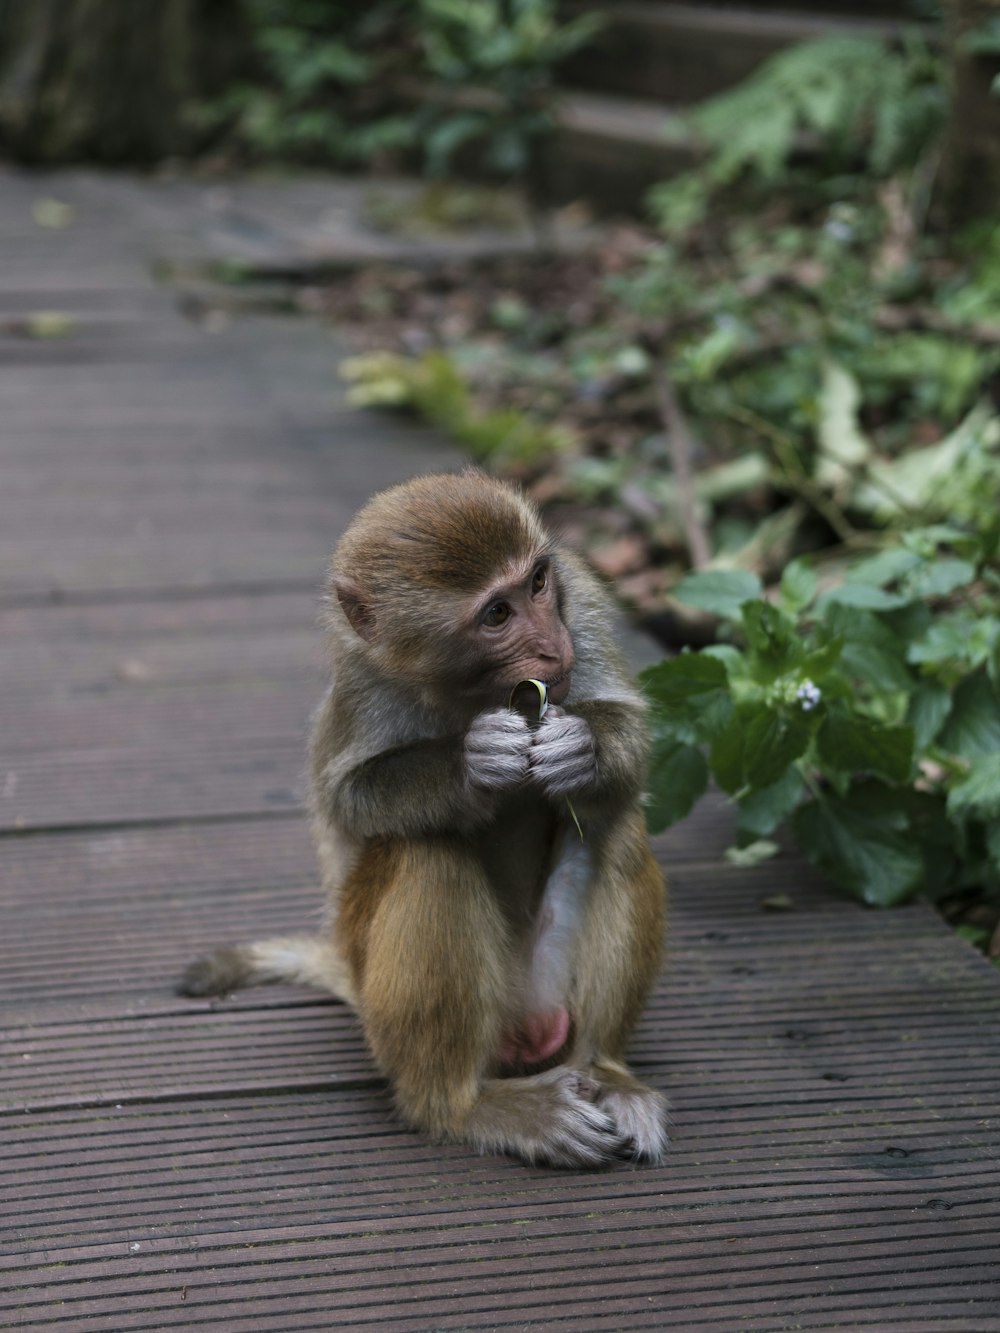 나무 산책로에 앉아 무언가를 먹고 있는 원숭이